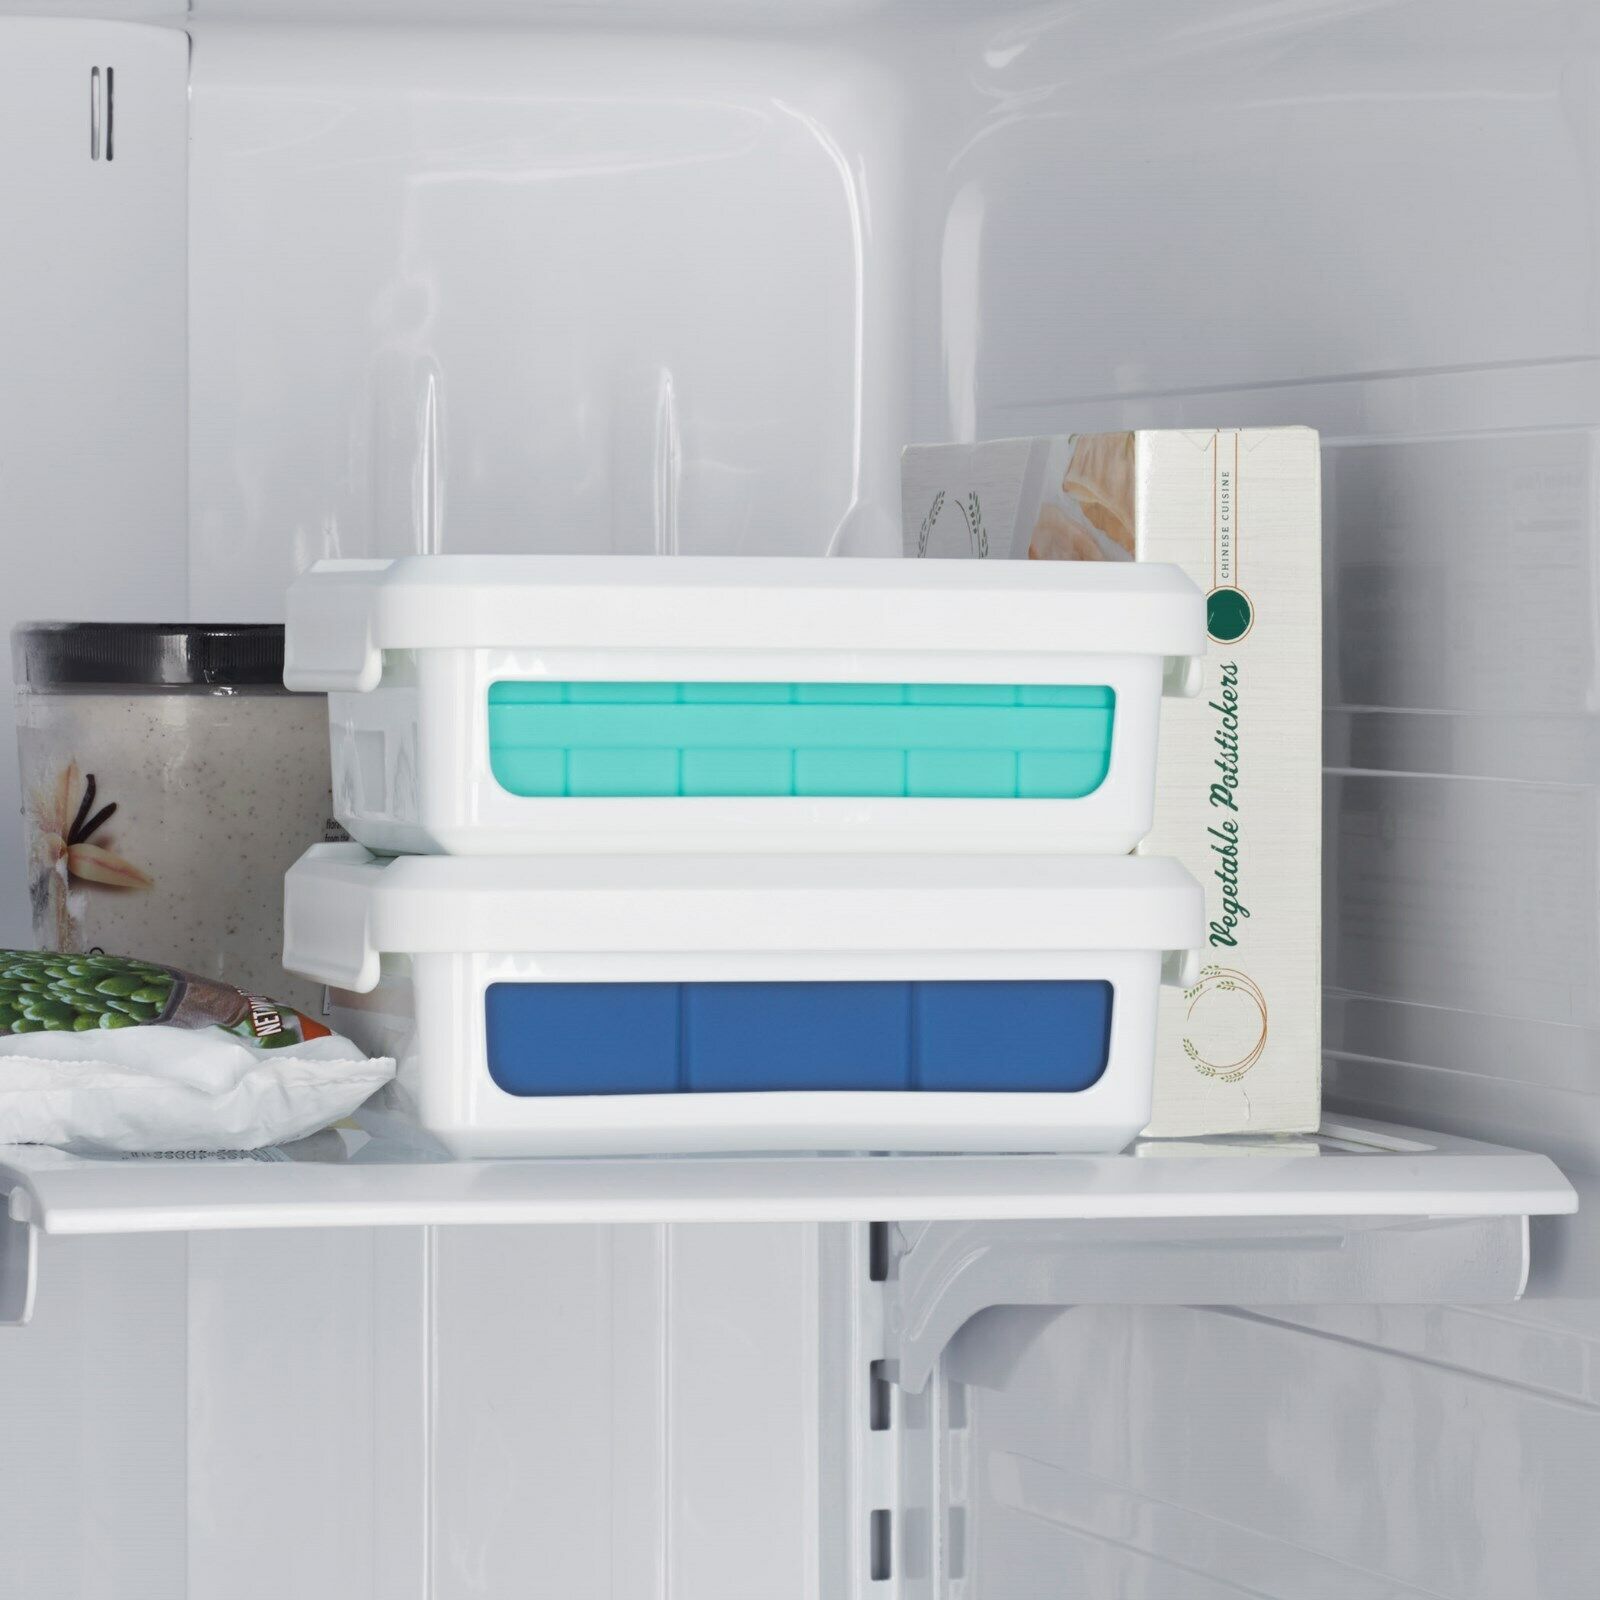 Auf diesem Bild sieht man zwei Eiswürfelbehälter aufeinandergestapelt in einem Kühlfach.